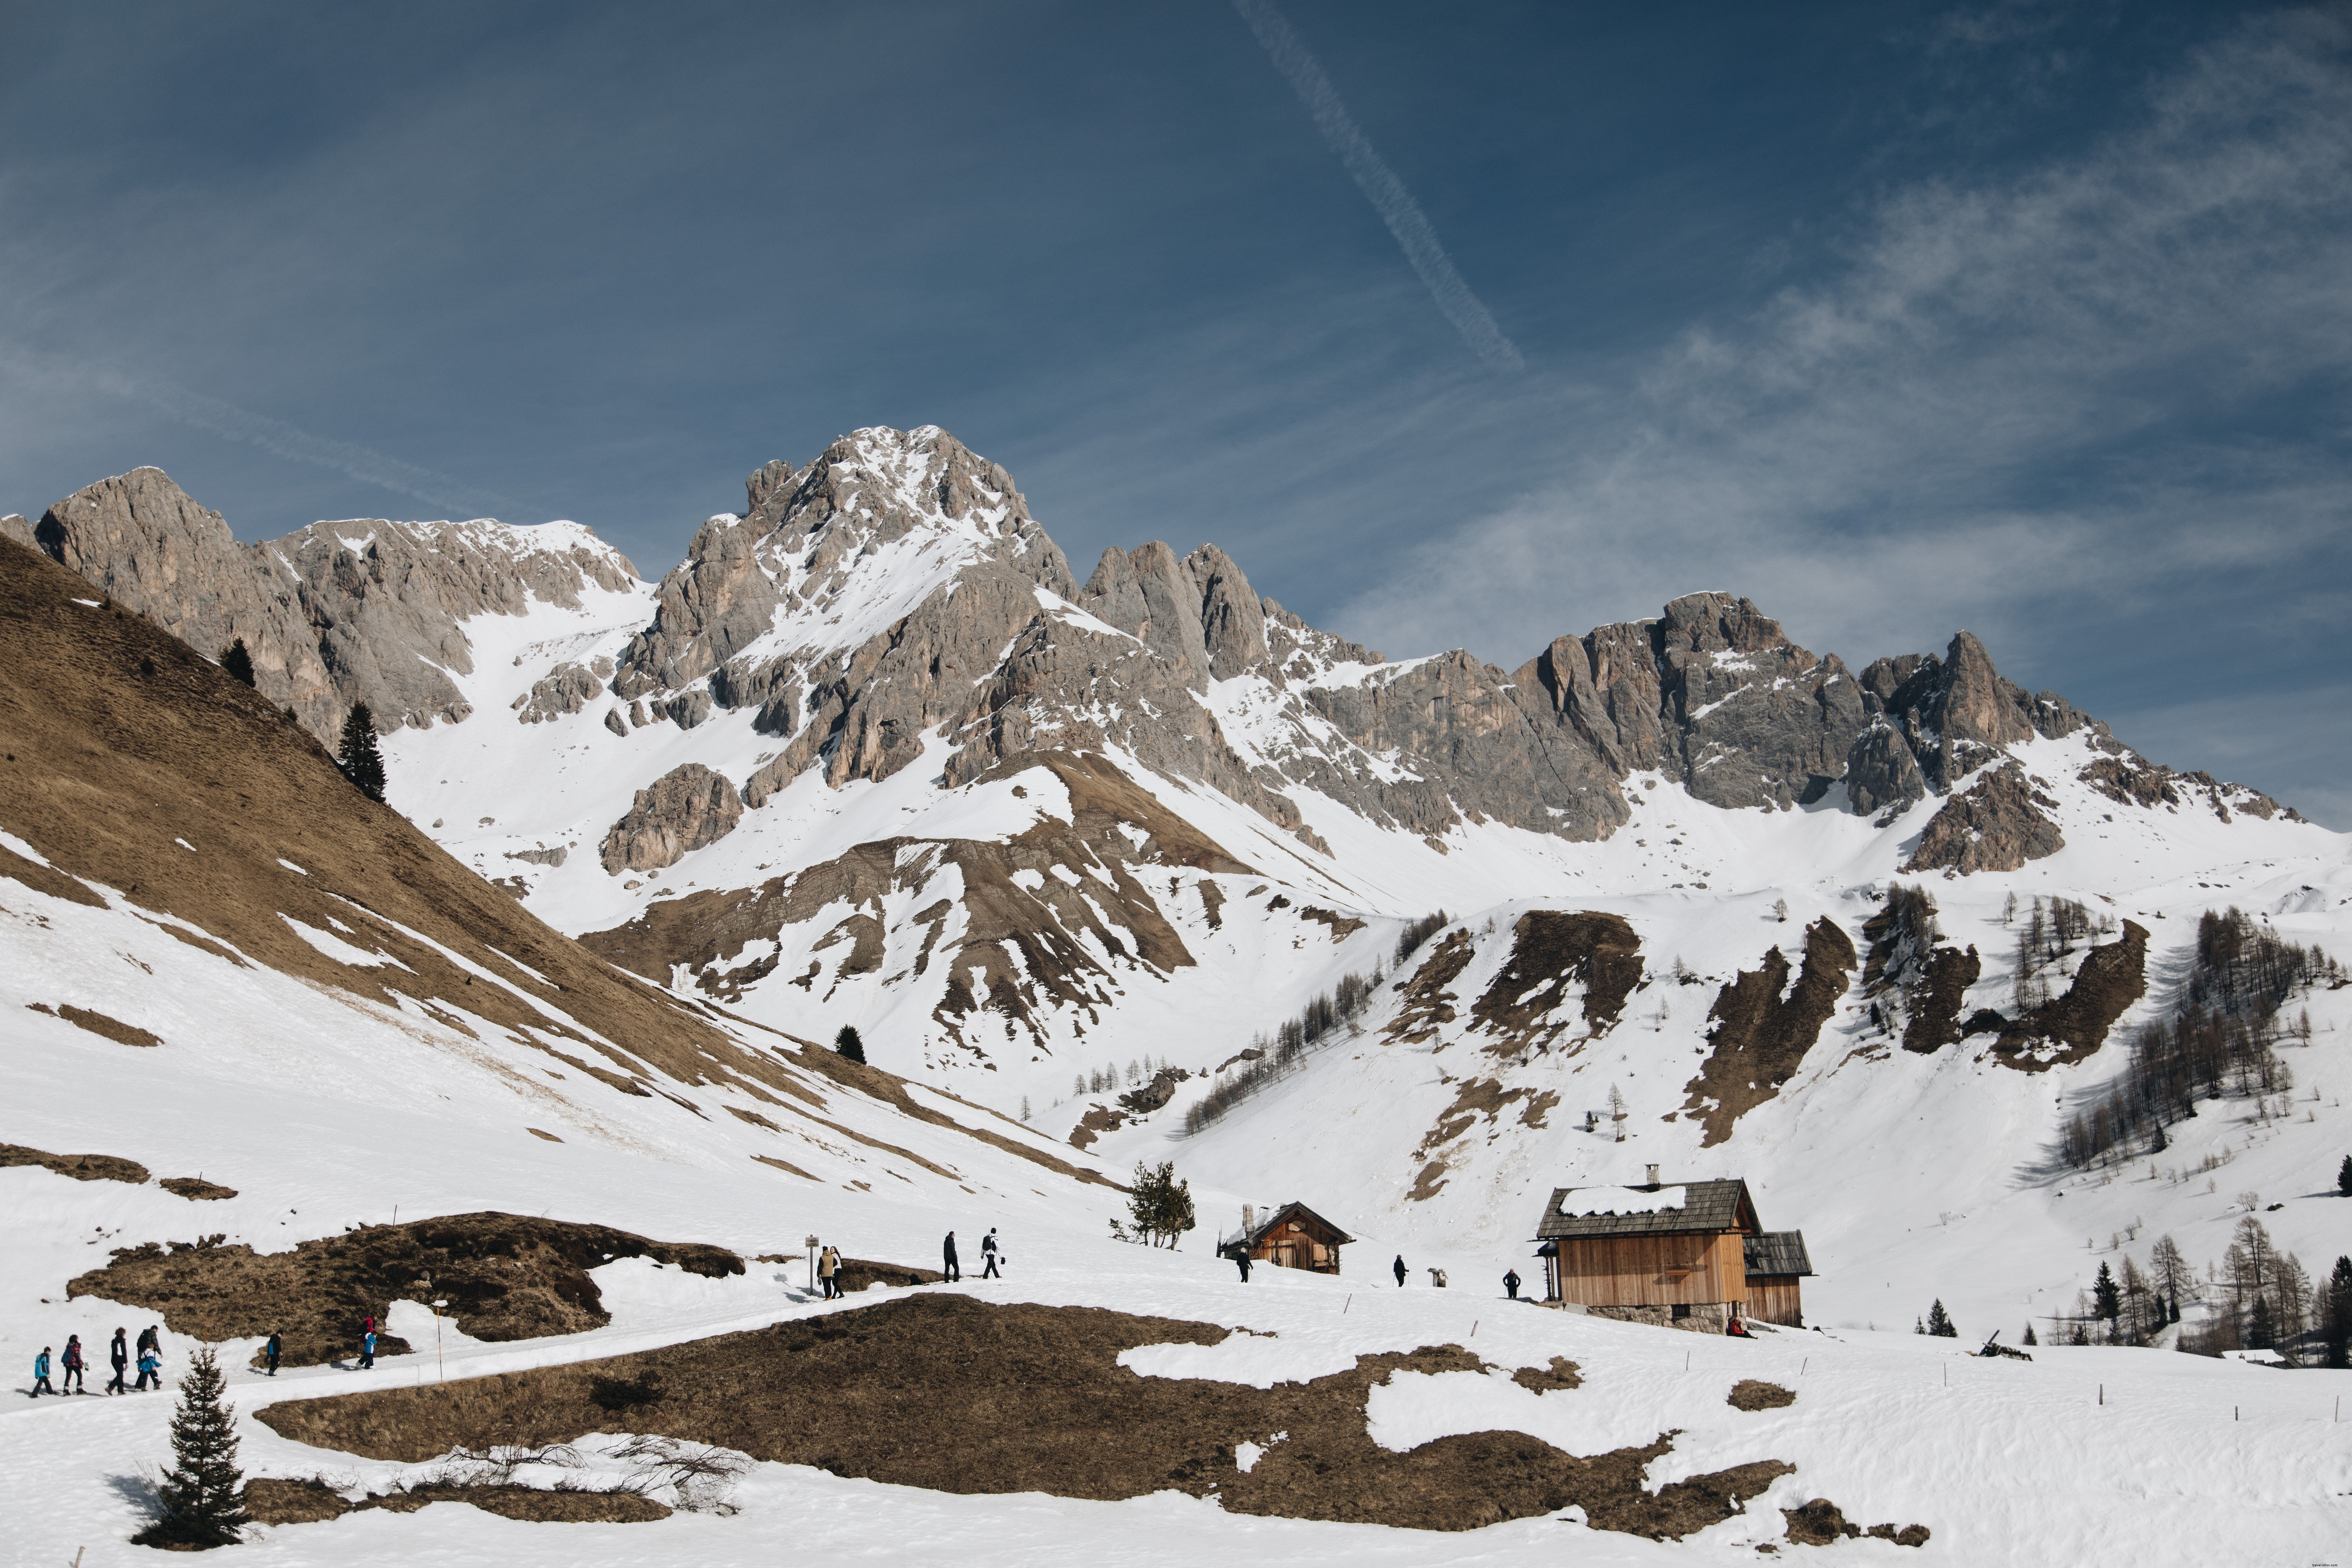 Los turistas regresan a la foto de las cabañas de troncos nevados 